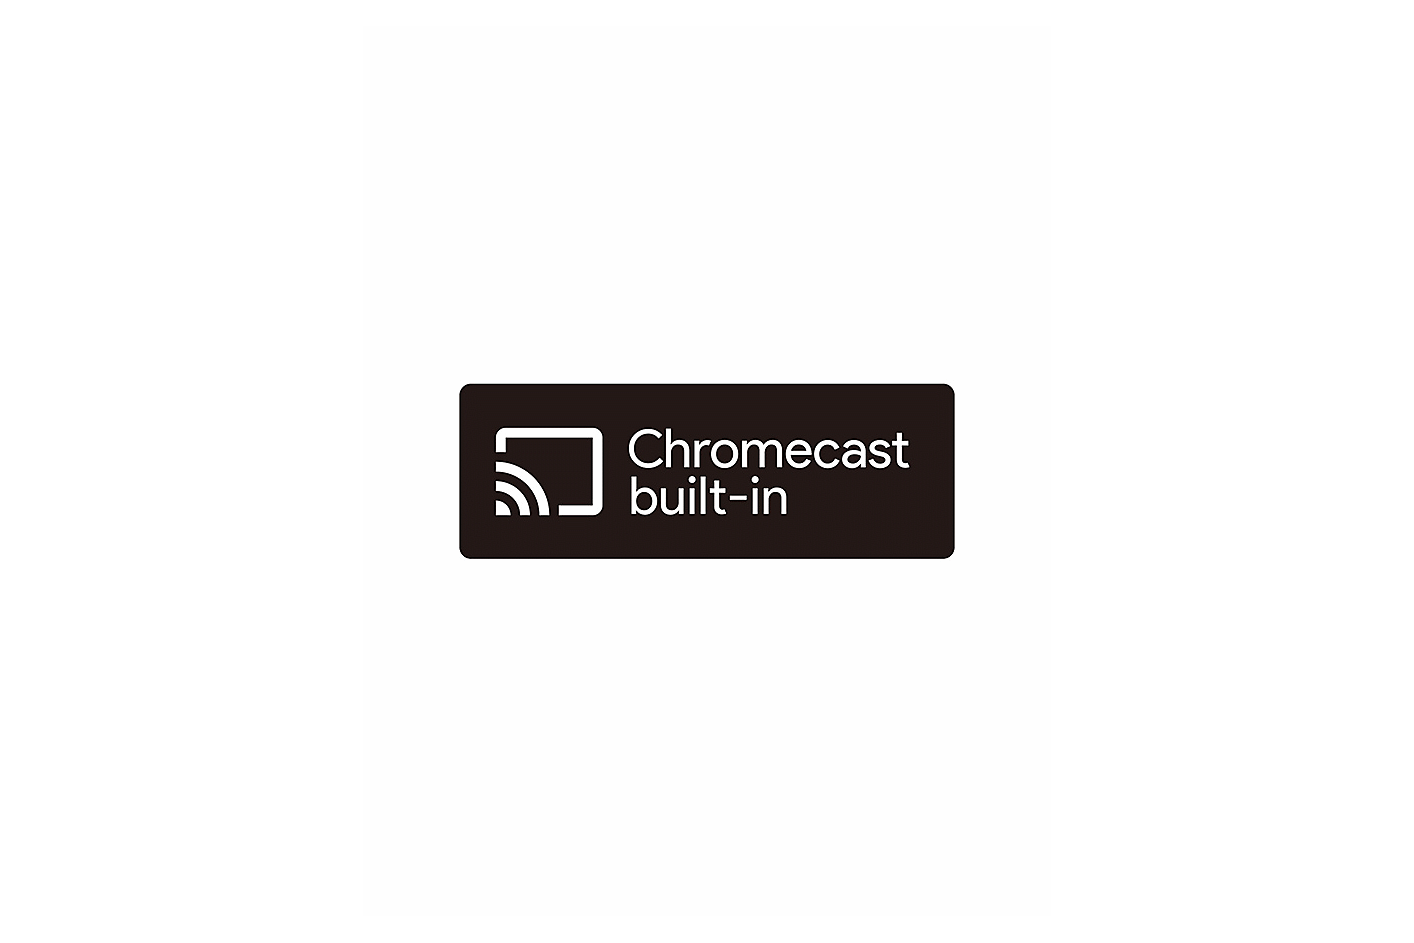 Snímek loga funkce Chromecast built-in na černém pozadí